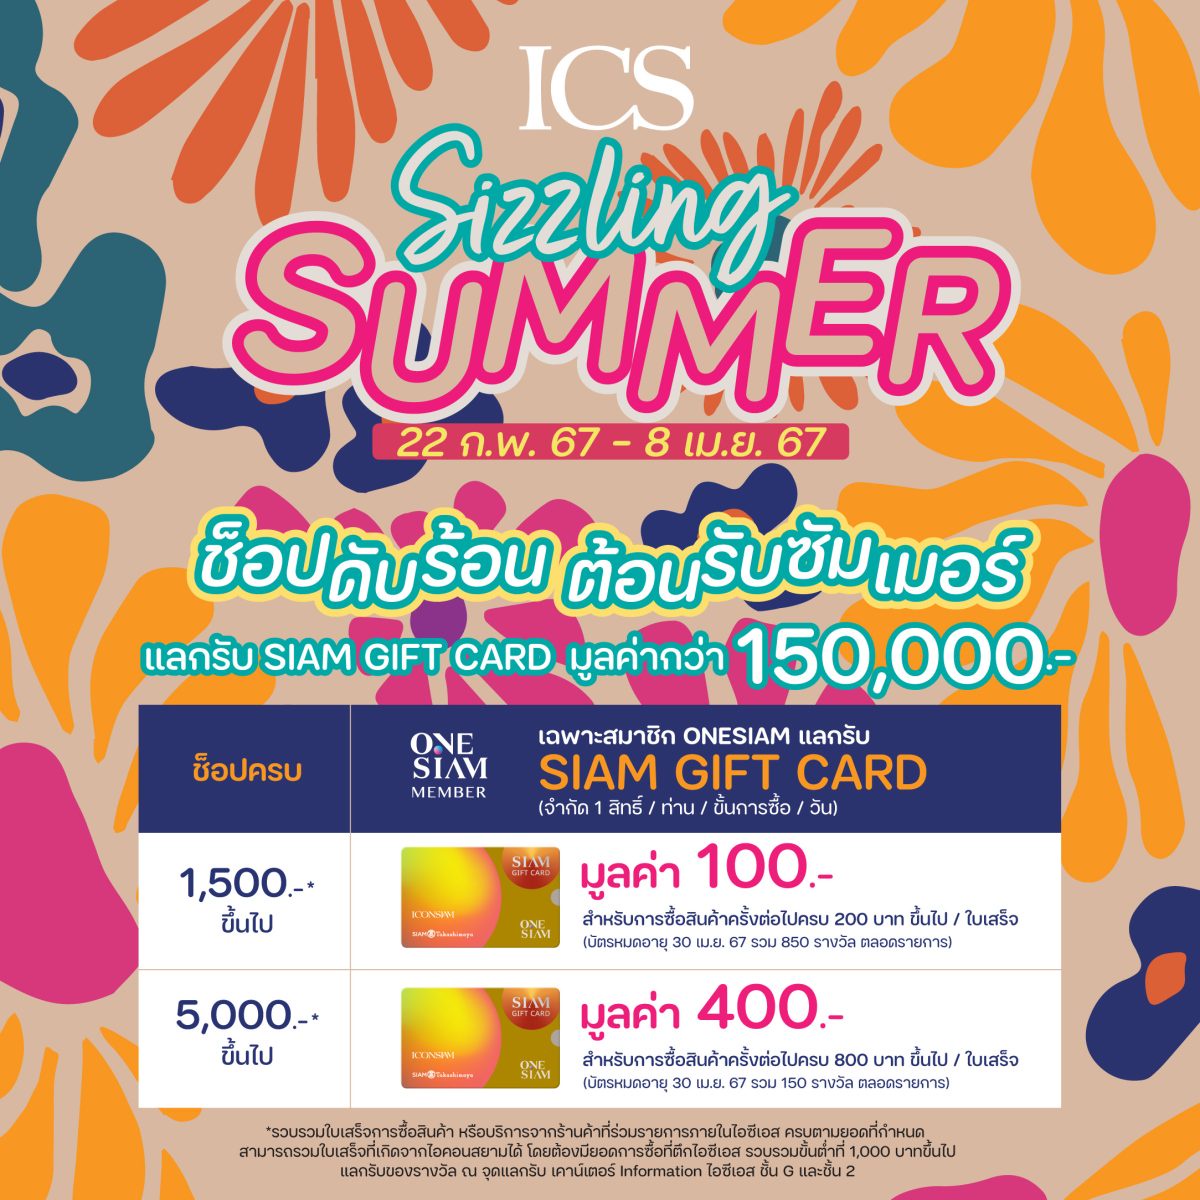 ไอซีเอส จัดแคมเปญ ICS Sizzling Summer ช้อปดับร้อน ต้อนรับซัมเมอร์ แลกรับ SIAM GIFT CARD รวมมูลค่า 1.5 แสนบาท ตั้งแต่วันนี้ - 8 เมษายน 2567